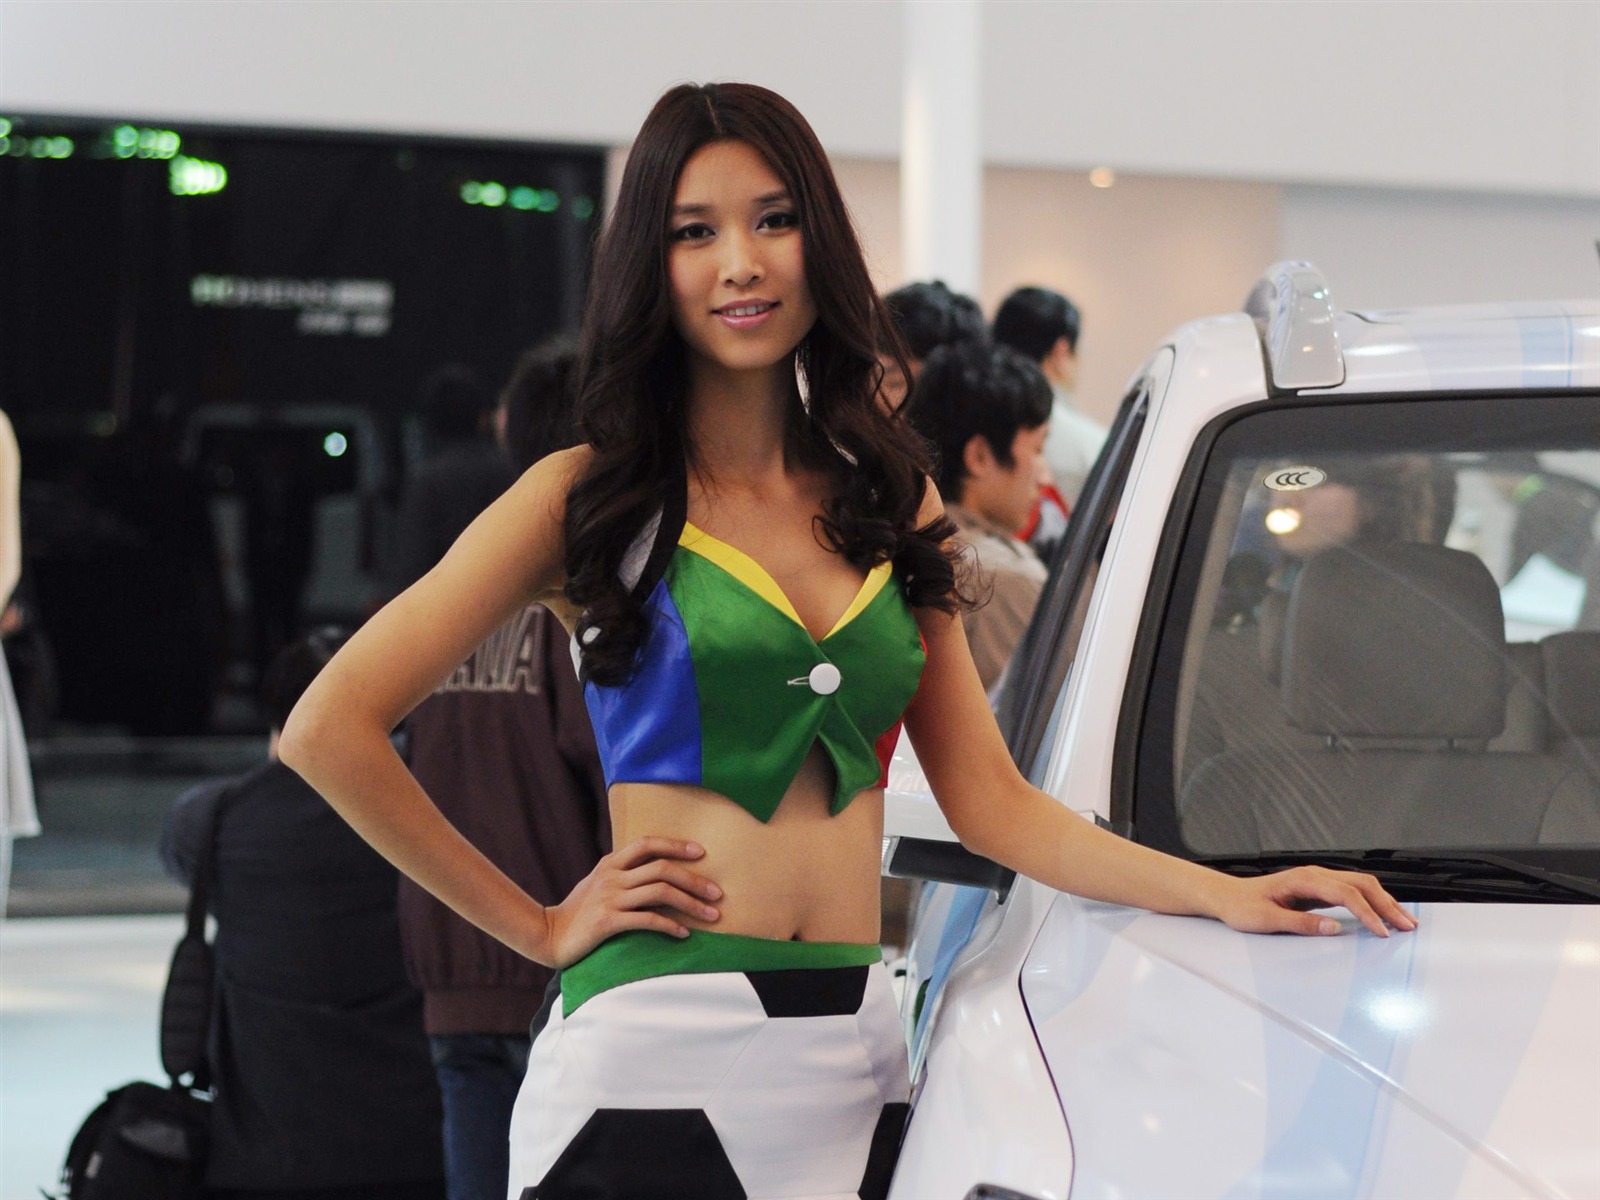 2010 Beijing International Auto Show (bemicoo works) #6 - 1600x1200